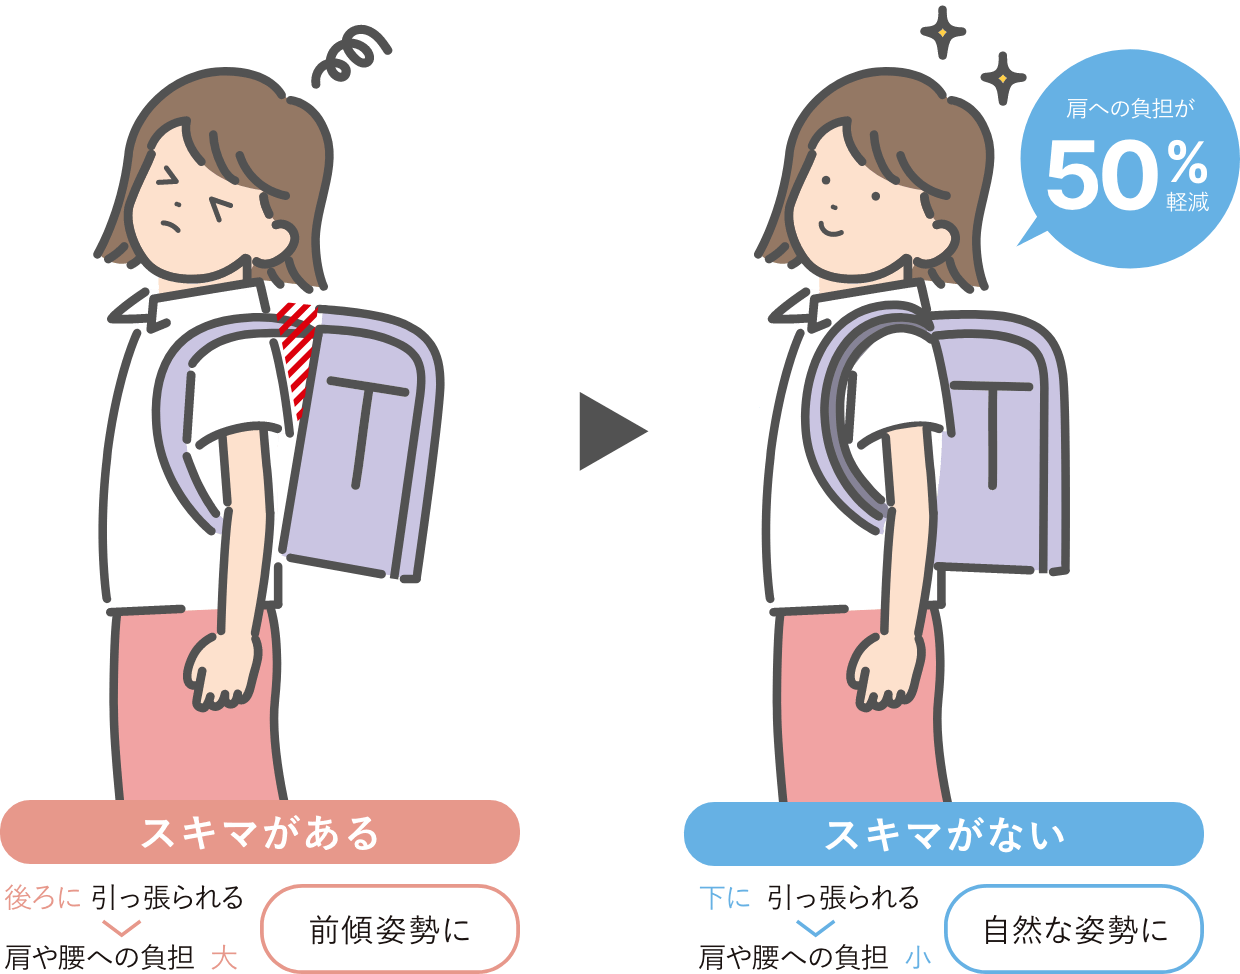 カバン本体とお子さまの背中との接触面積が10%アップすることで、肩への負担が約50%に軽減